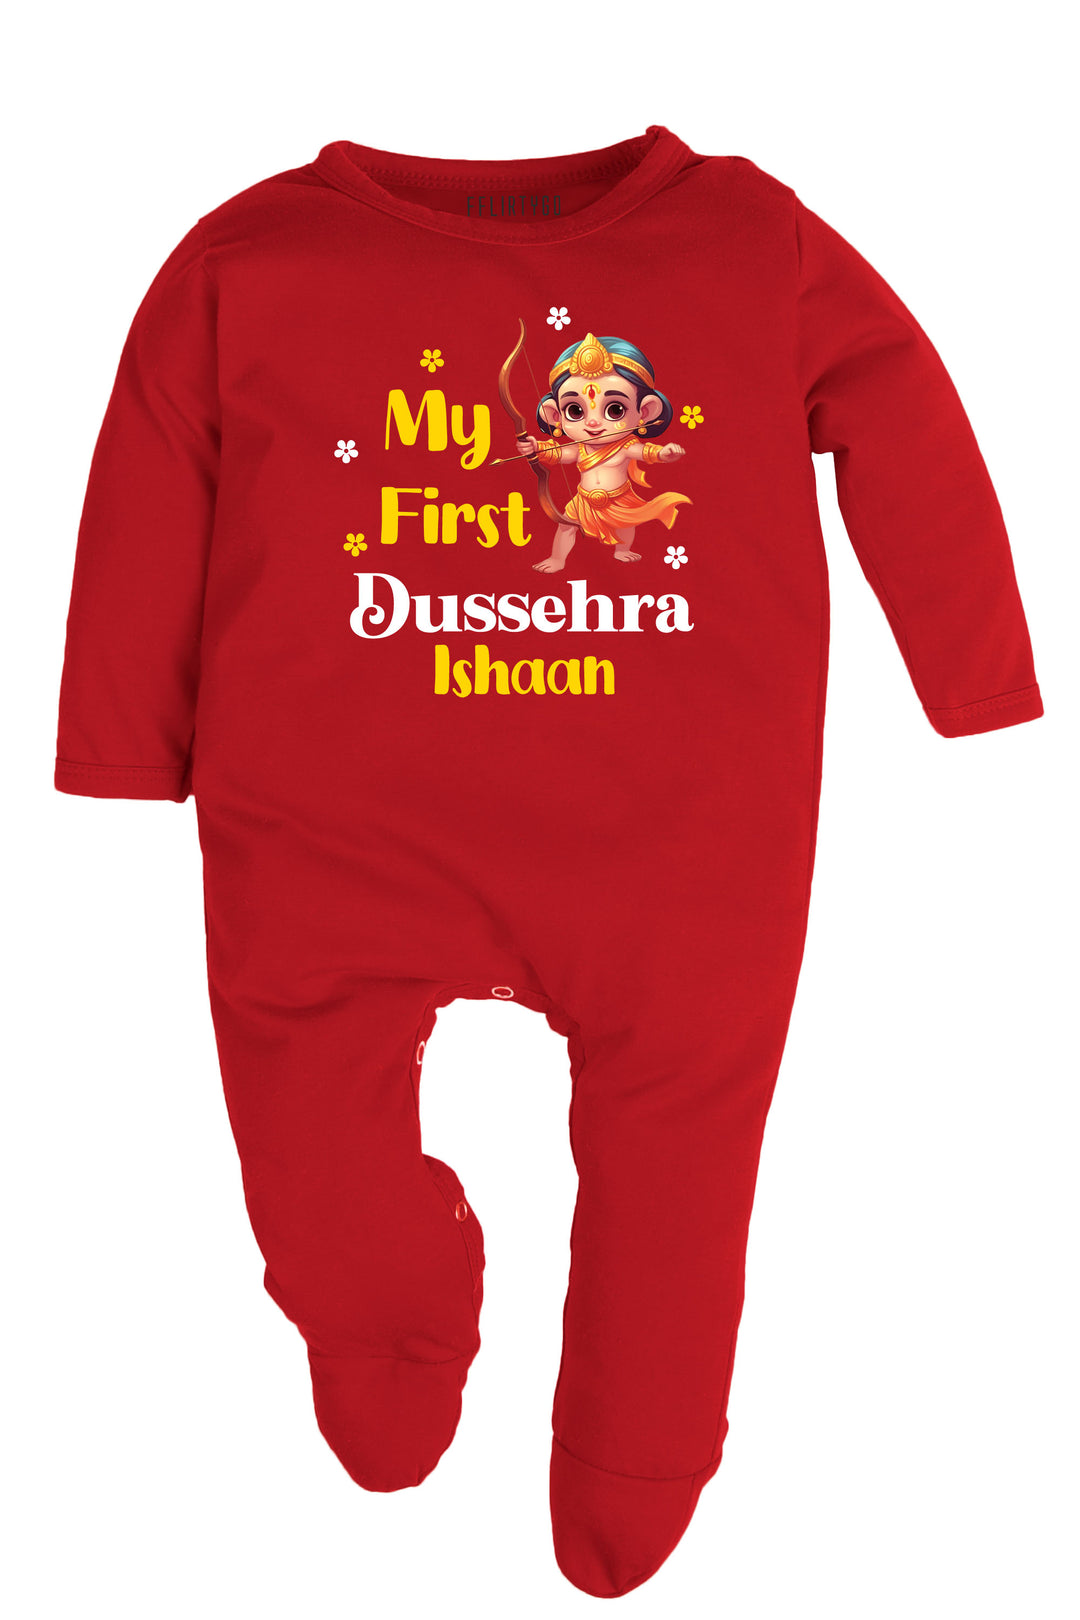 My First Dussehra Baby Romper | Onesies w/ Custom Name